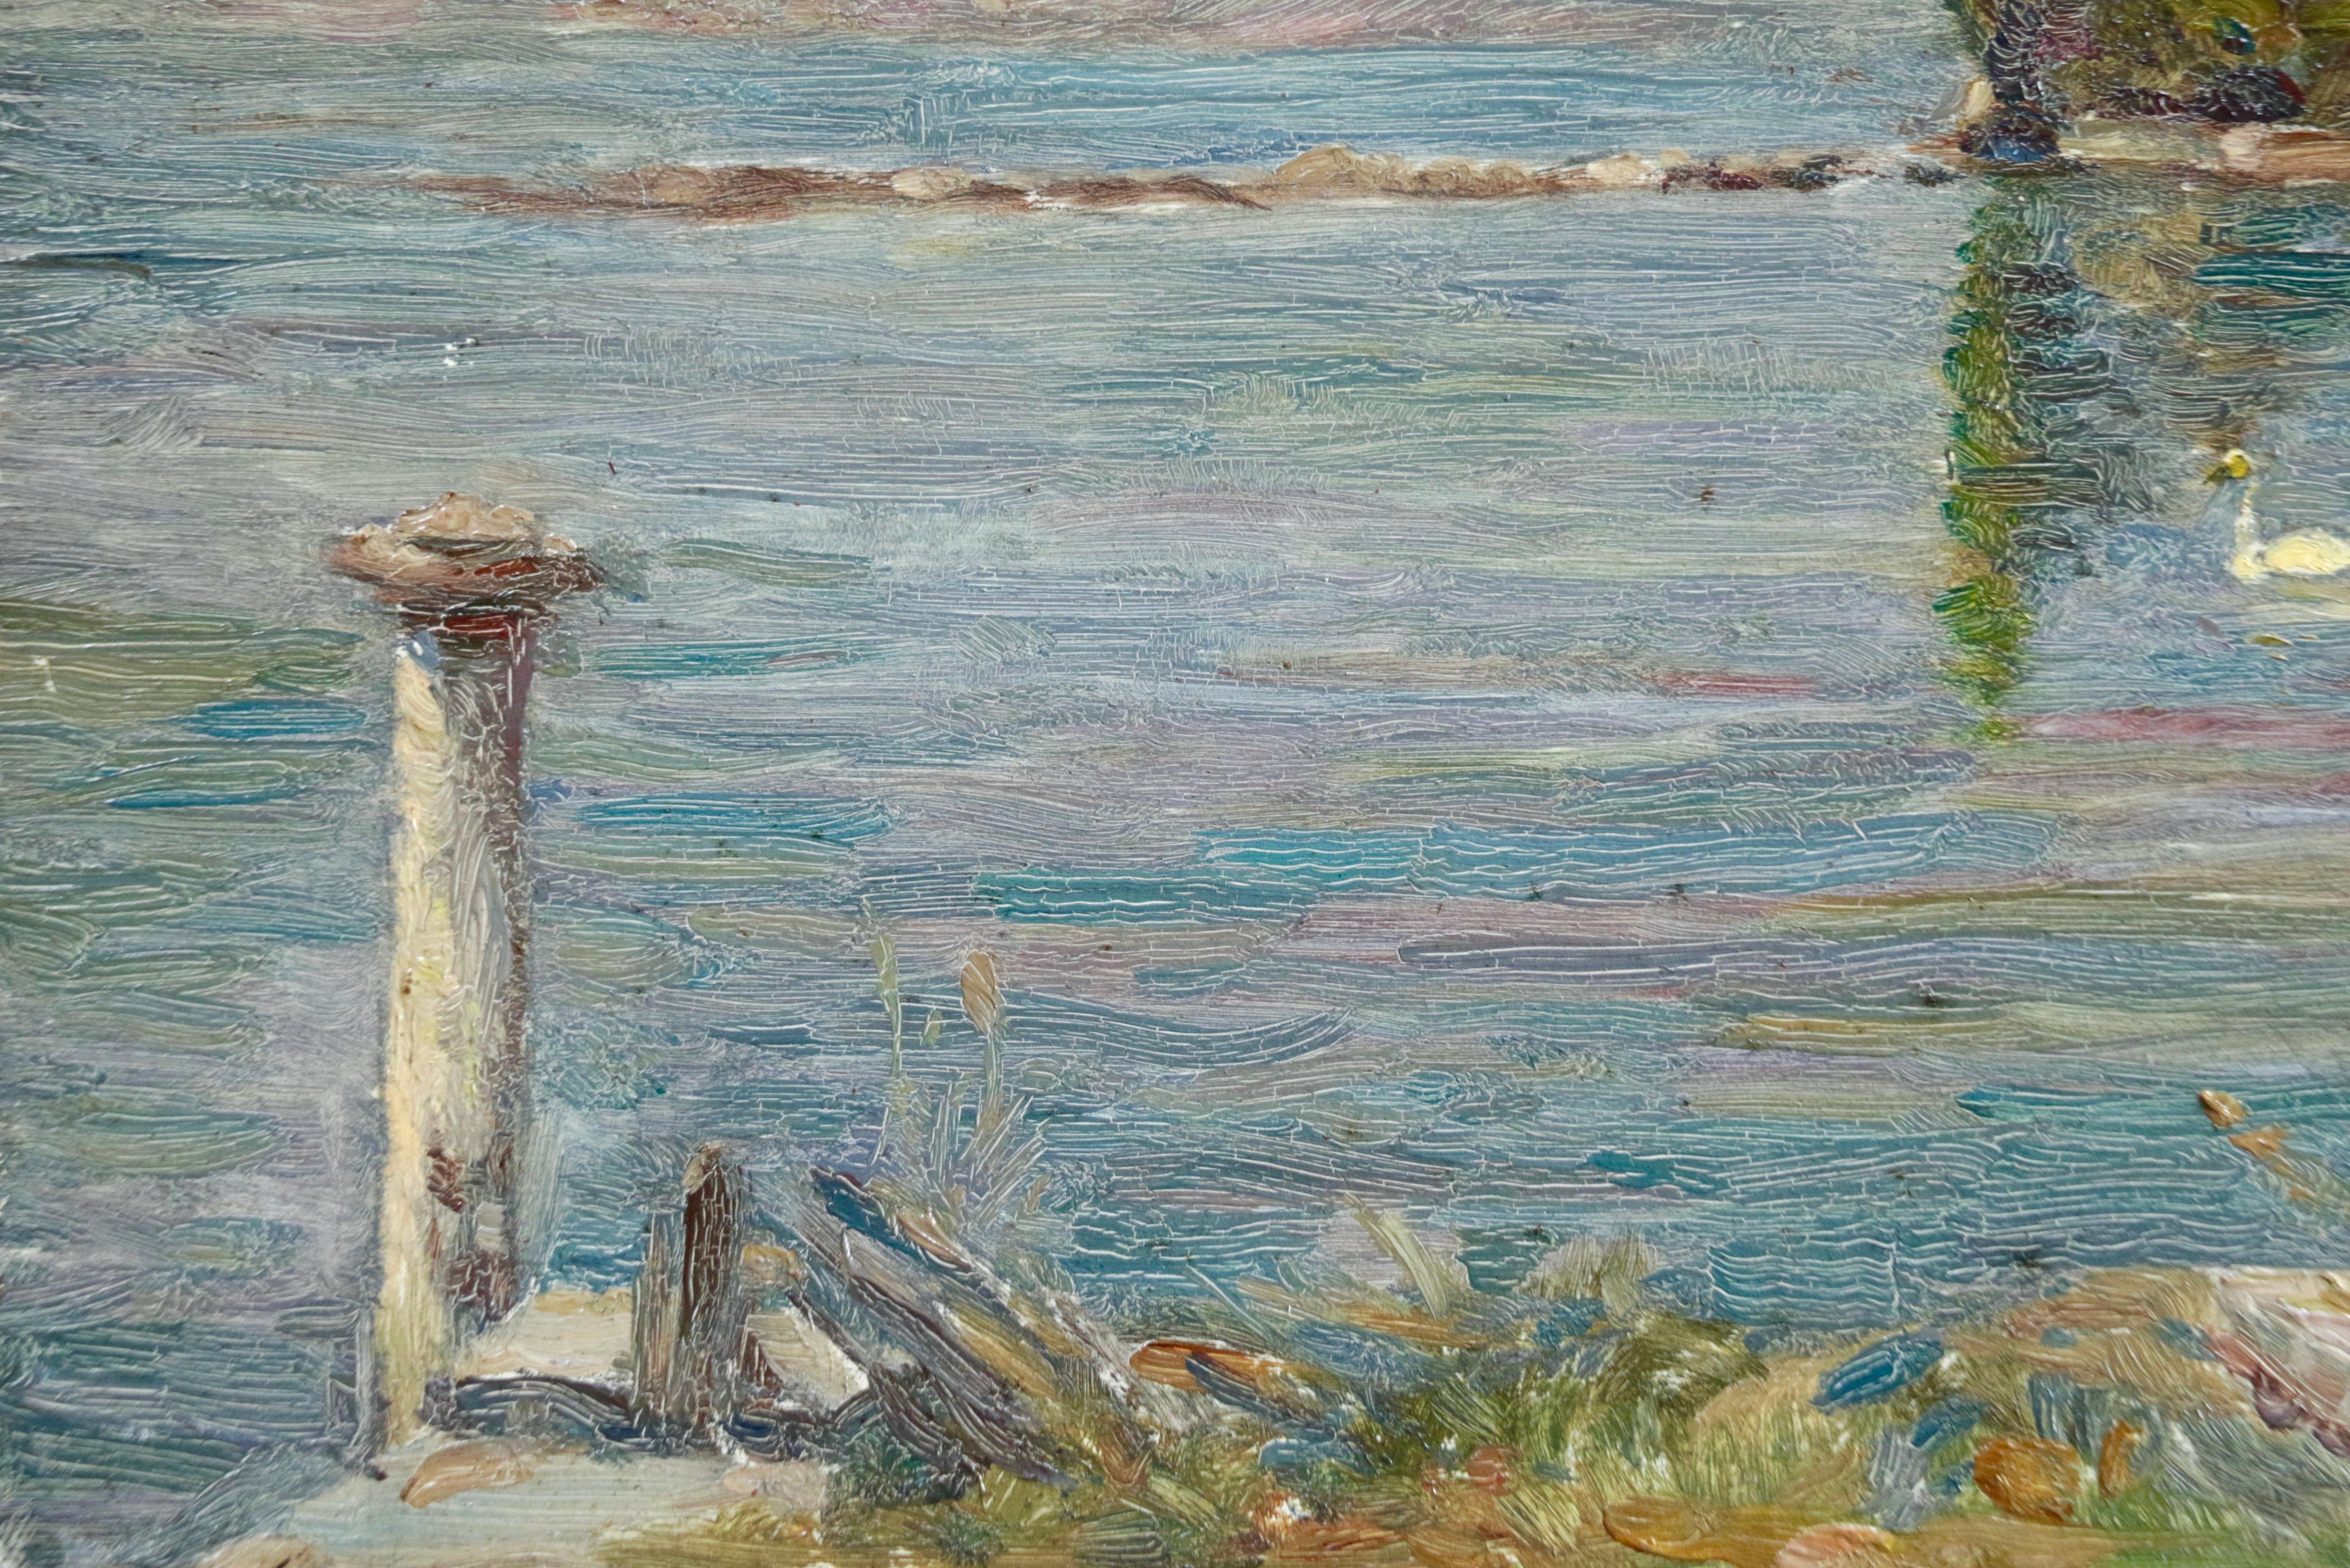 Les Cygnes - Impressionist Oil, Swans on Lake Landscape by Henri Duhem 1